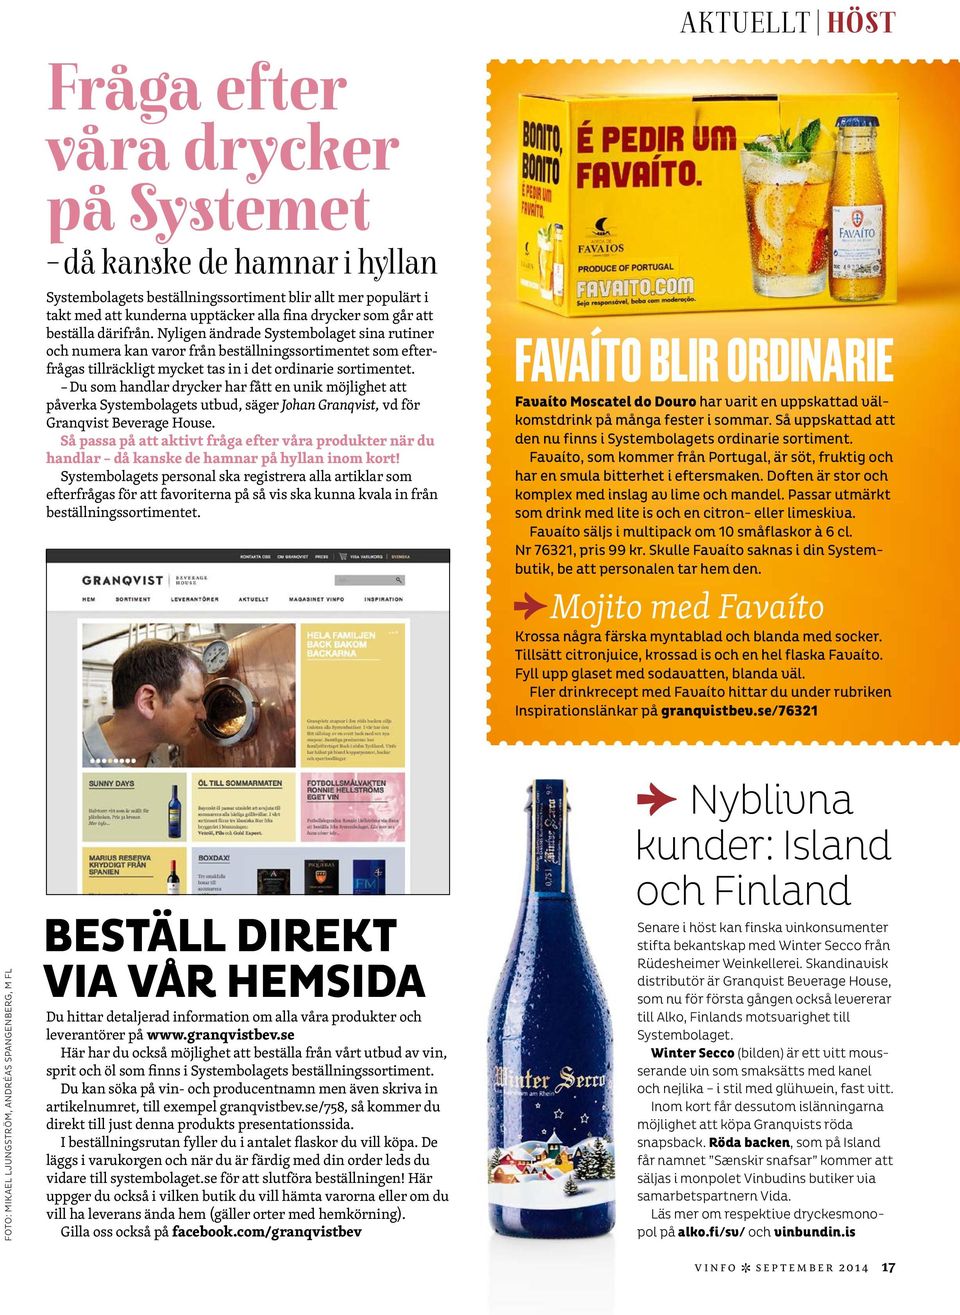 Du som handlar drycker har fått en unik möjlighet att påverka Systembolagets utbud, säger Johan Granqvist, vd för Granqvist Beverage House.